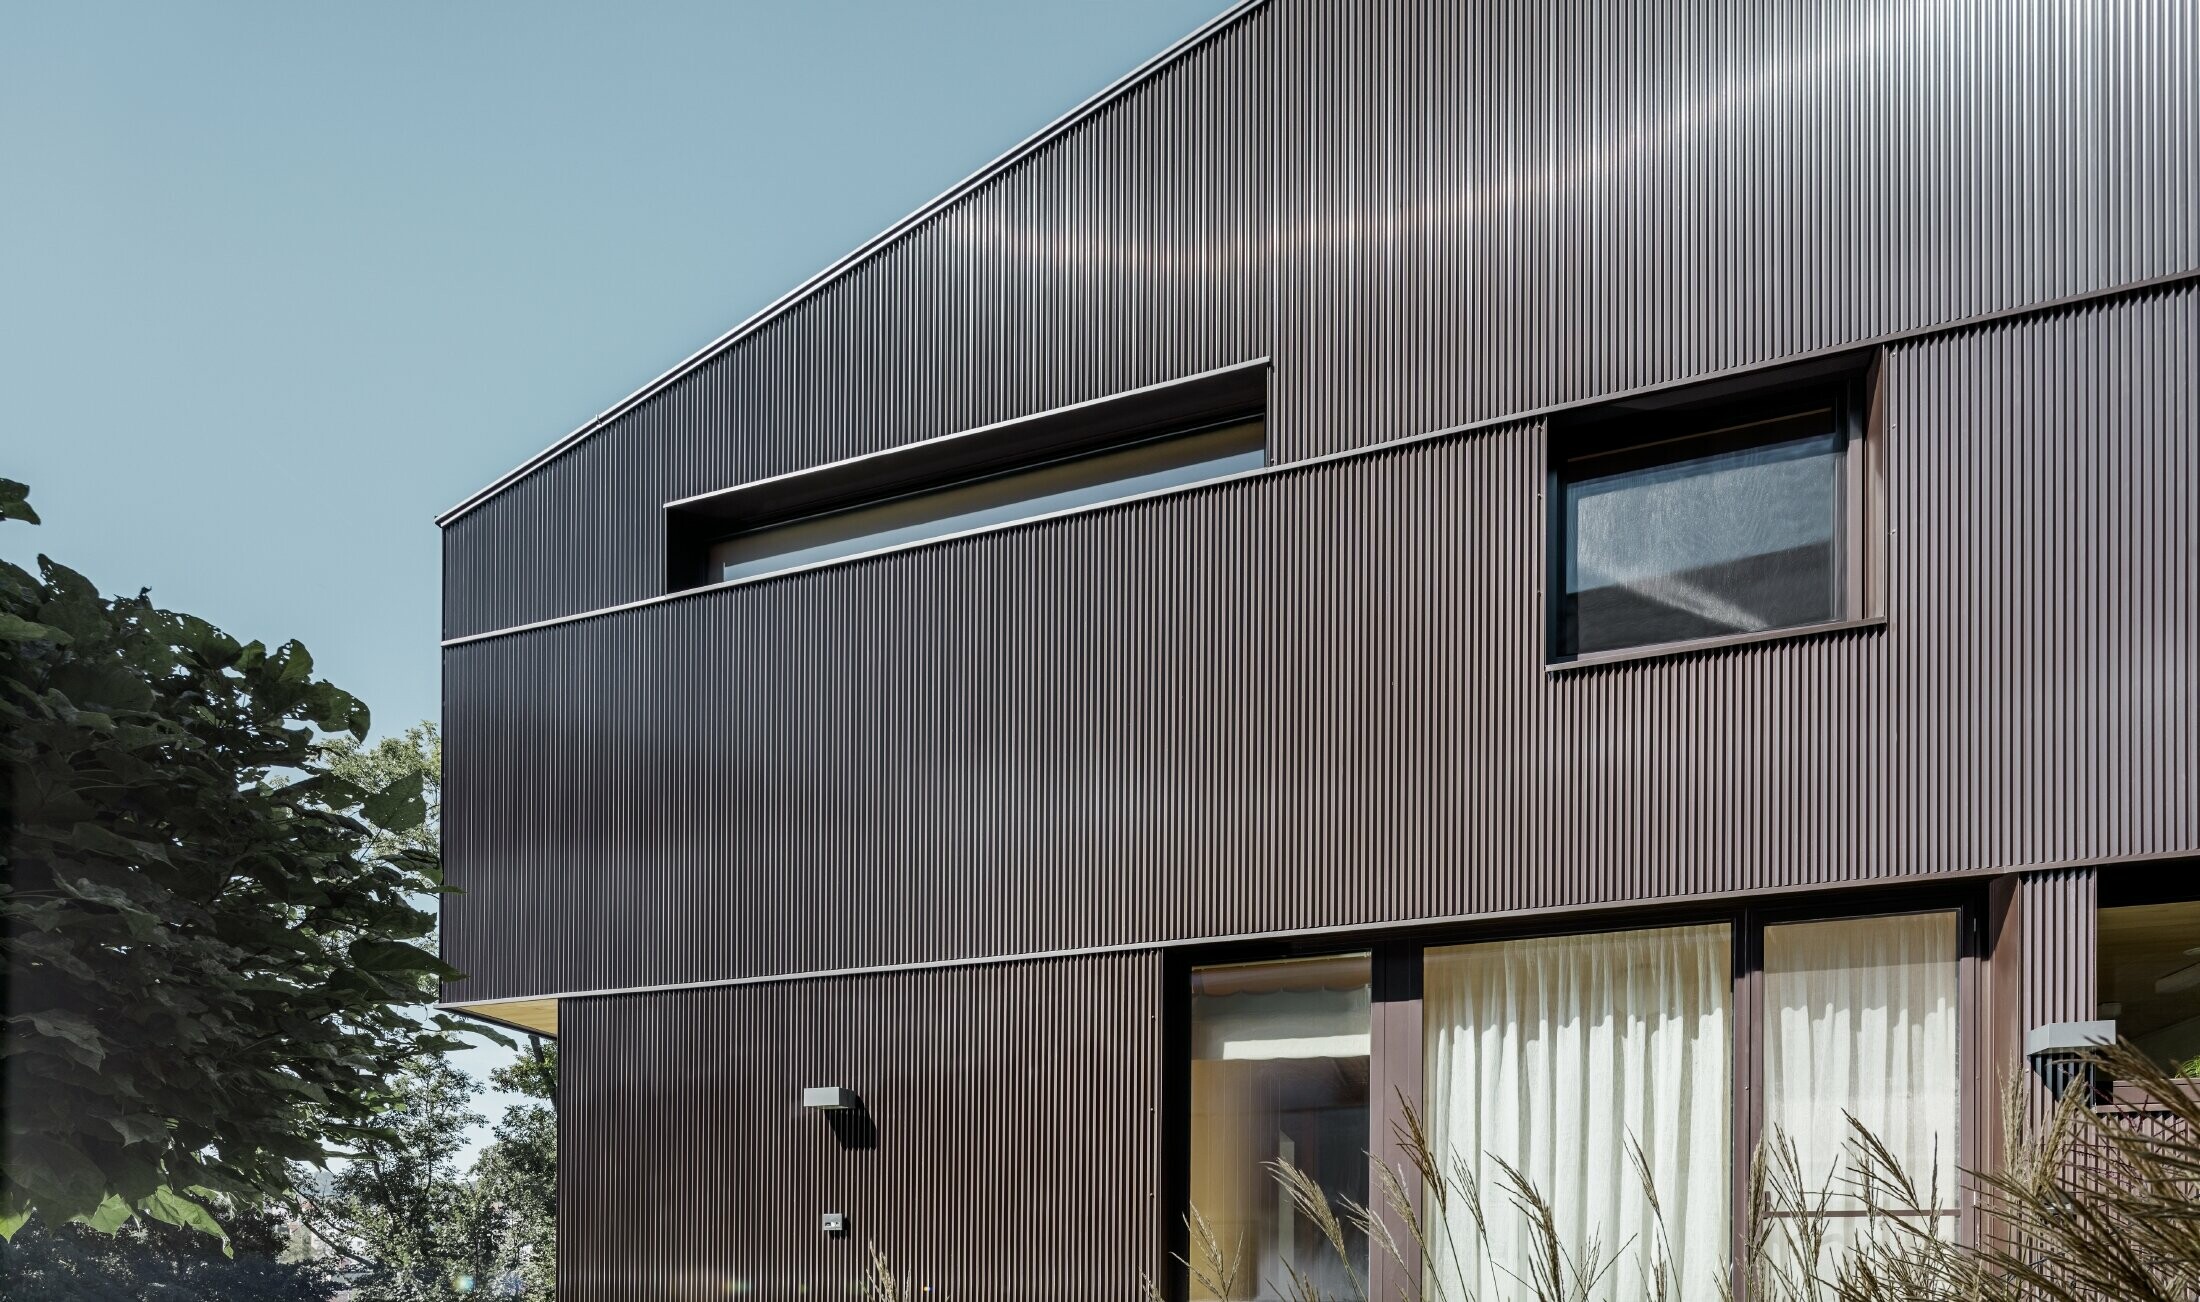 Modernes Einfamilienhaus mit einer Fassadenbekleidung von PREFA - Zackenprofil in Braun.